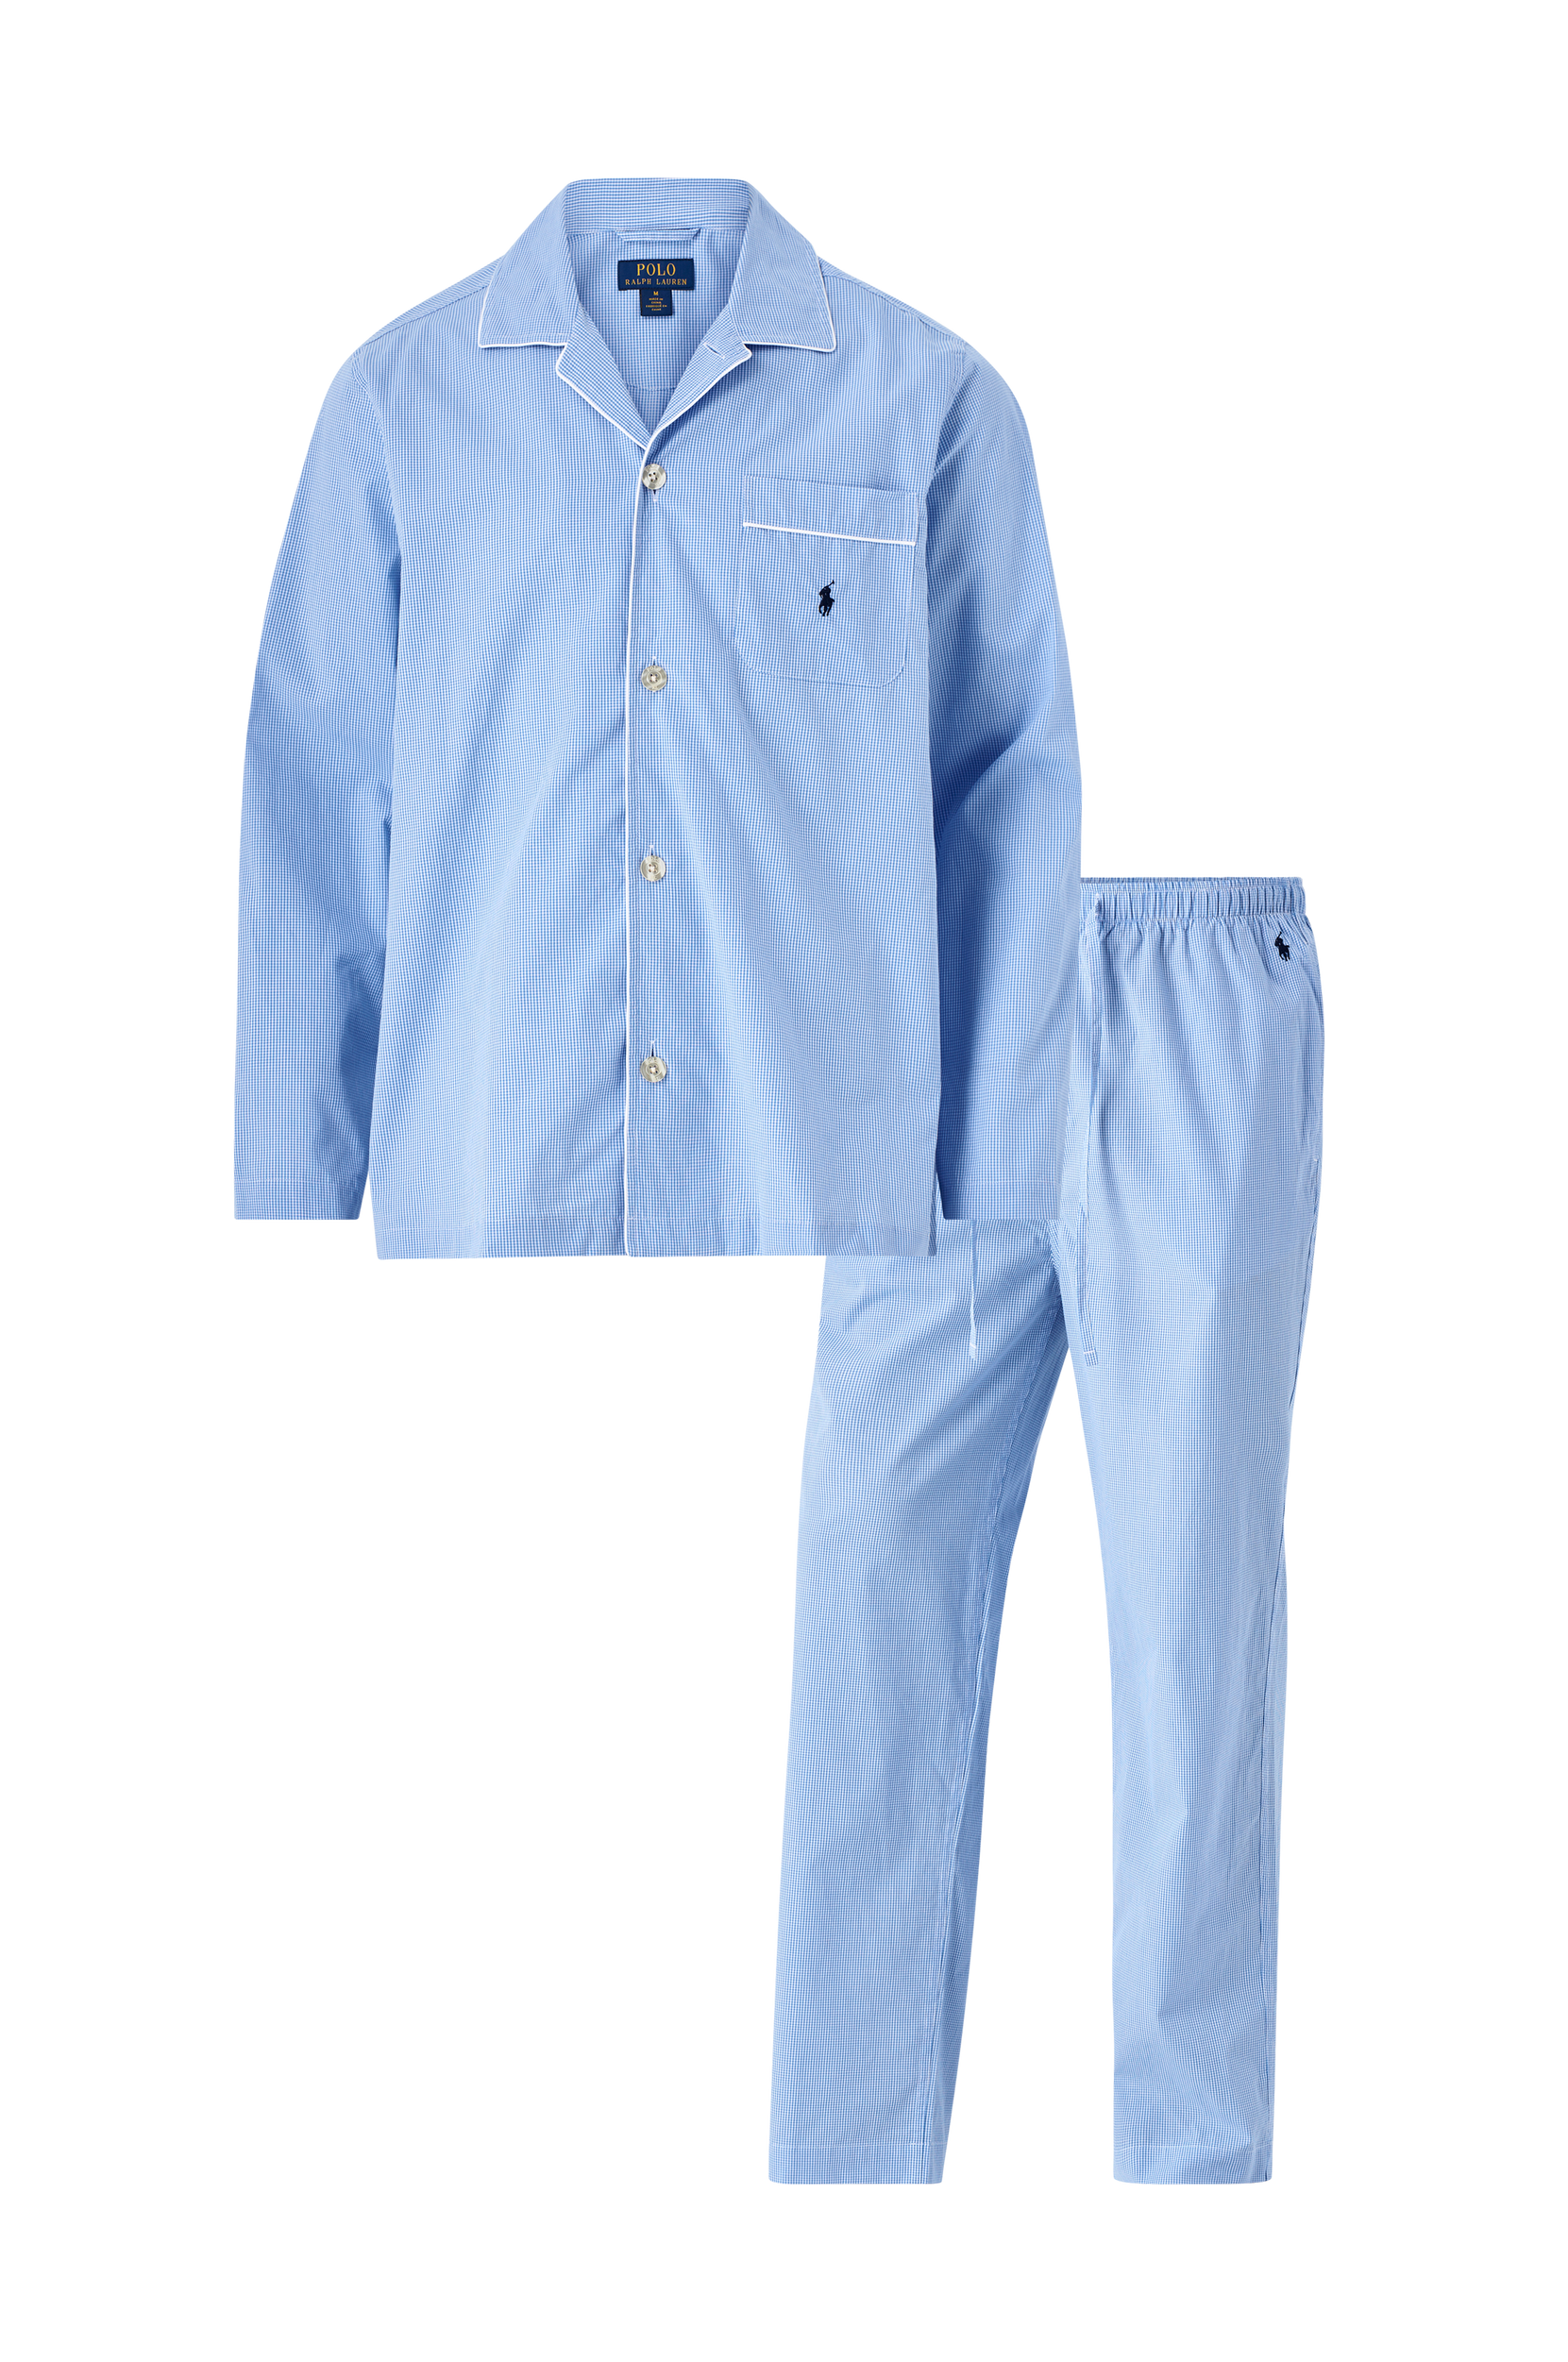 Polo Ralph Lauren - Pyjamas Cotton-Sst - Blå - S